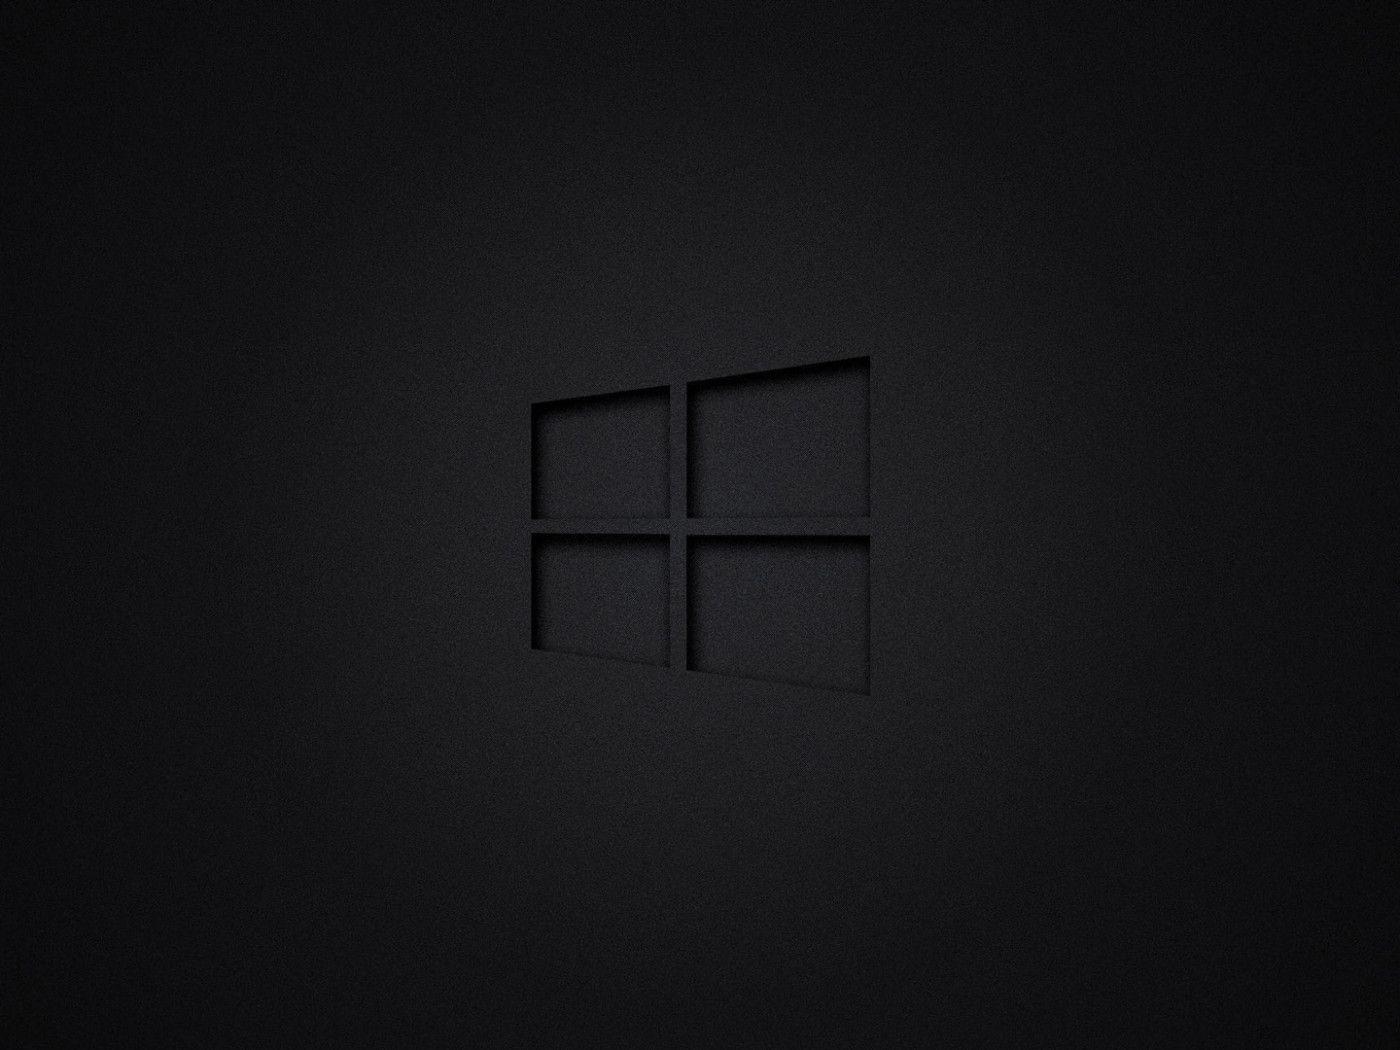 deskscapes black background windows 10